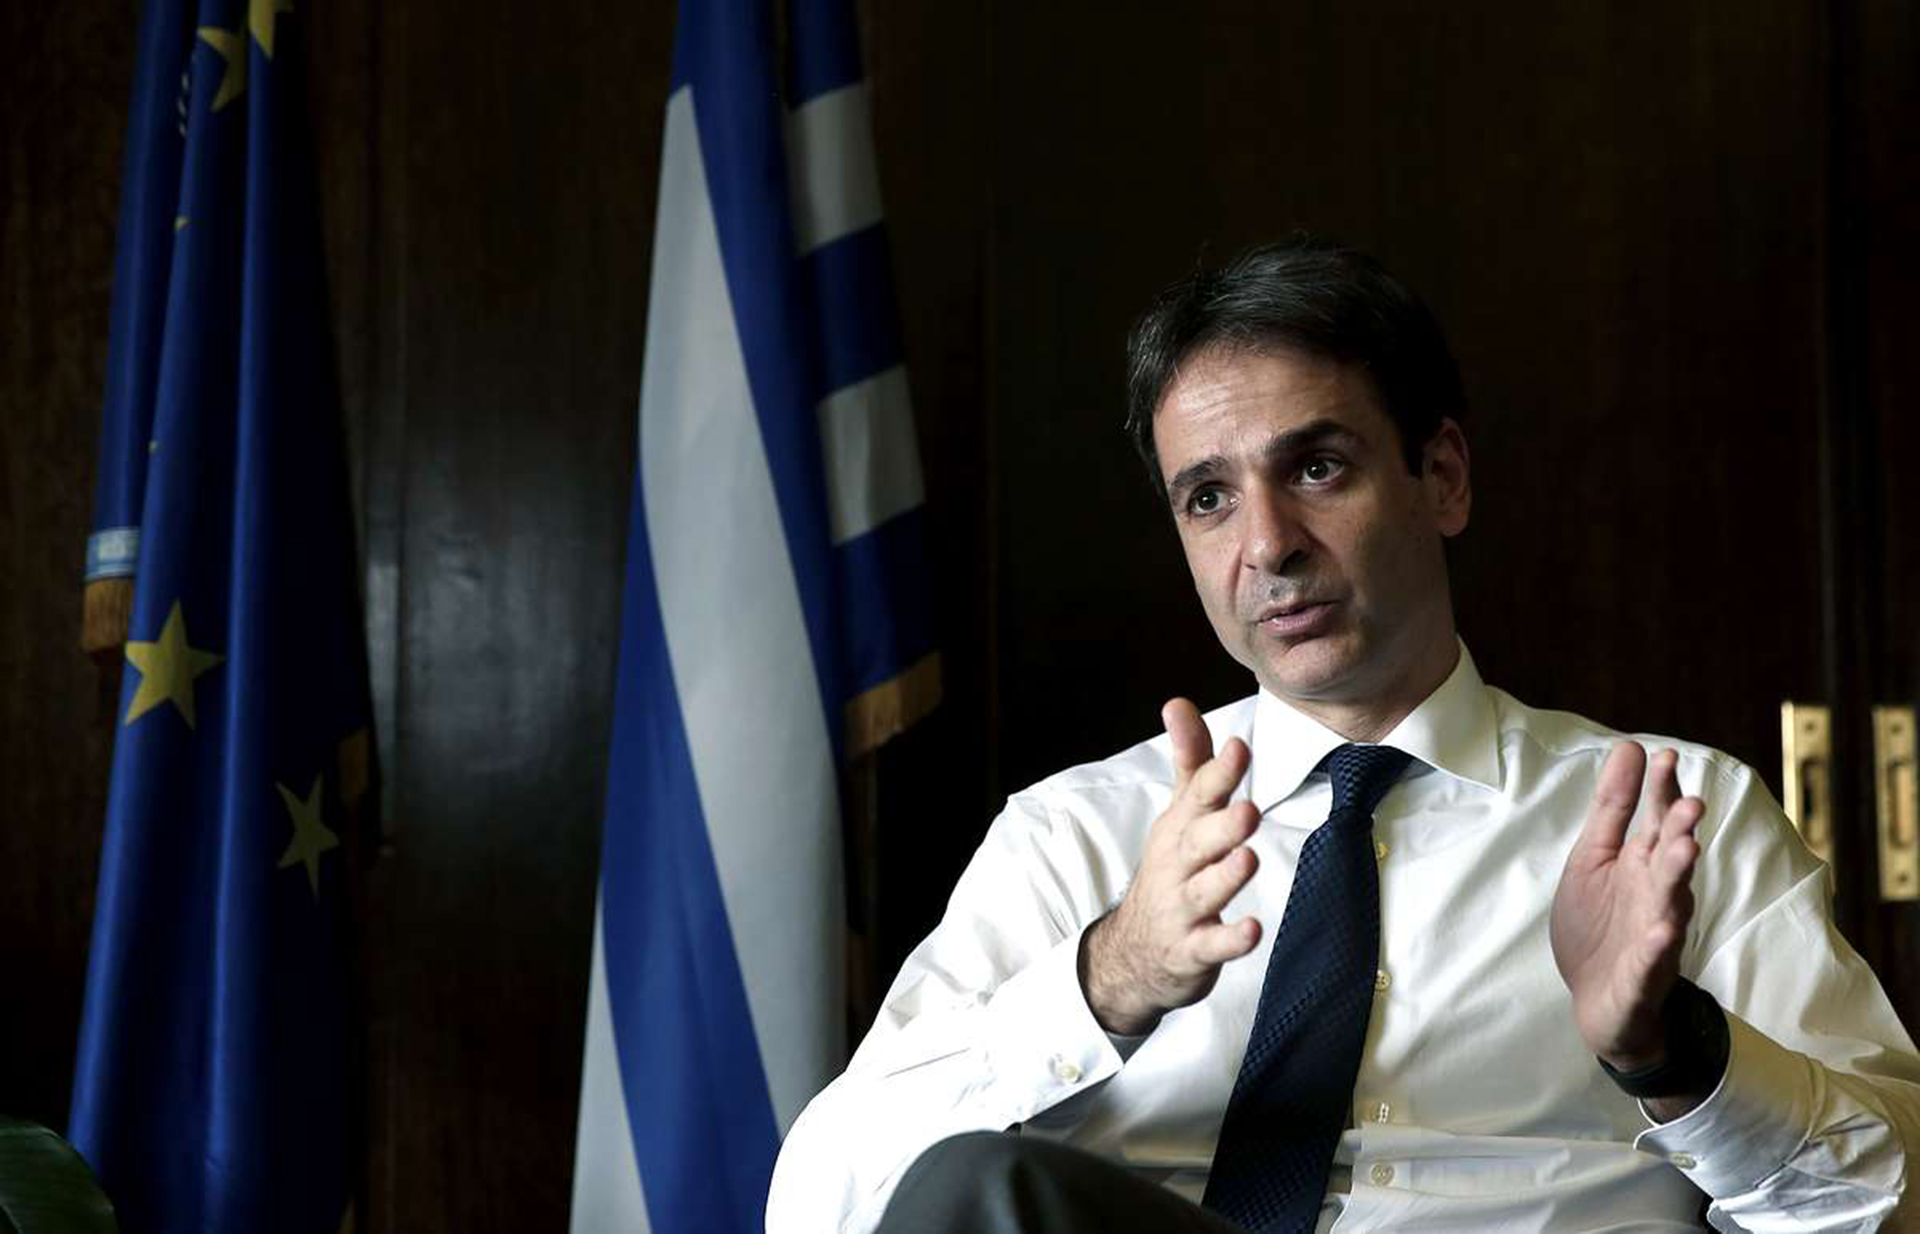 Հունաստանը կոչ է արել արագացնել ադրբեջանական գազը Եվրոպա փոխադրելու նախագծերը